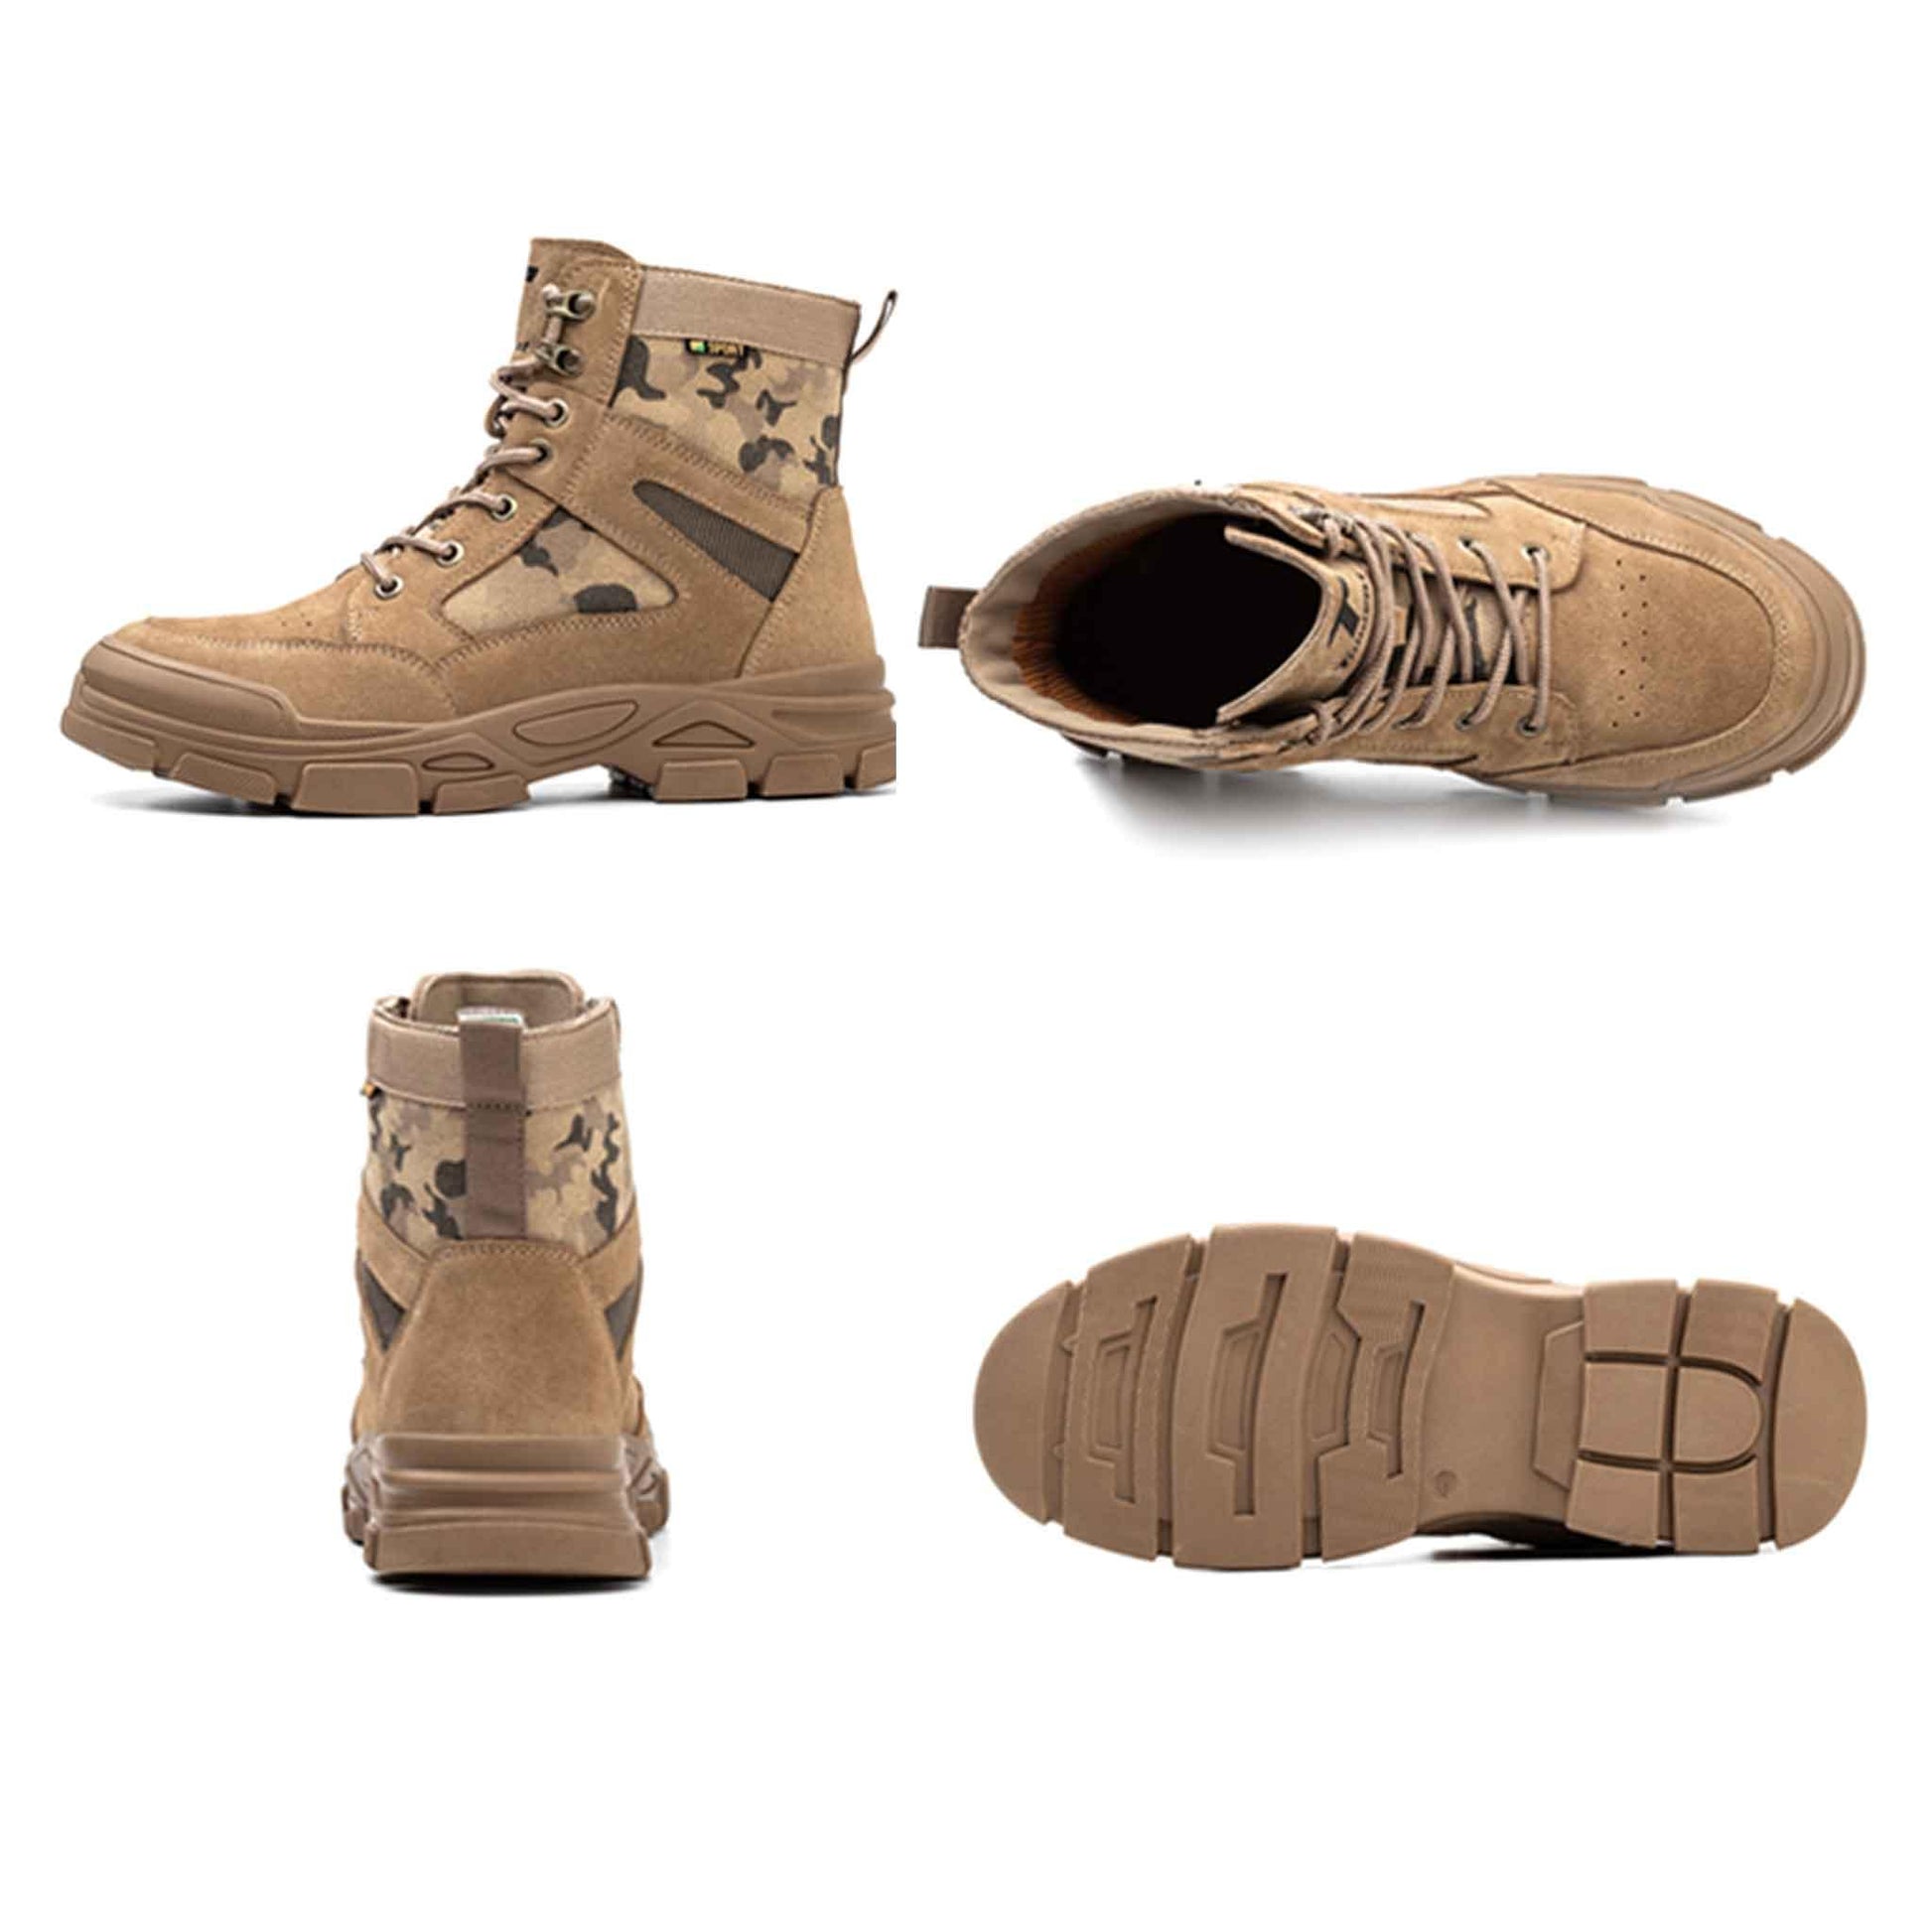 Men's Steel Toe Boots - Fire Resistant | Z006 - USINE PRO Footwear